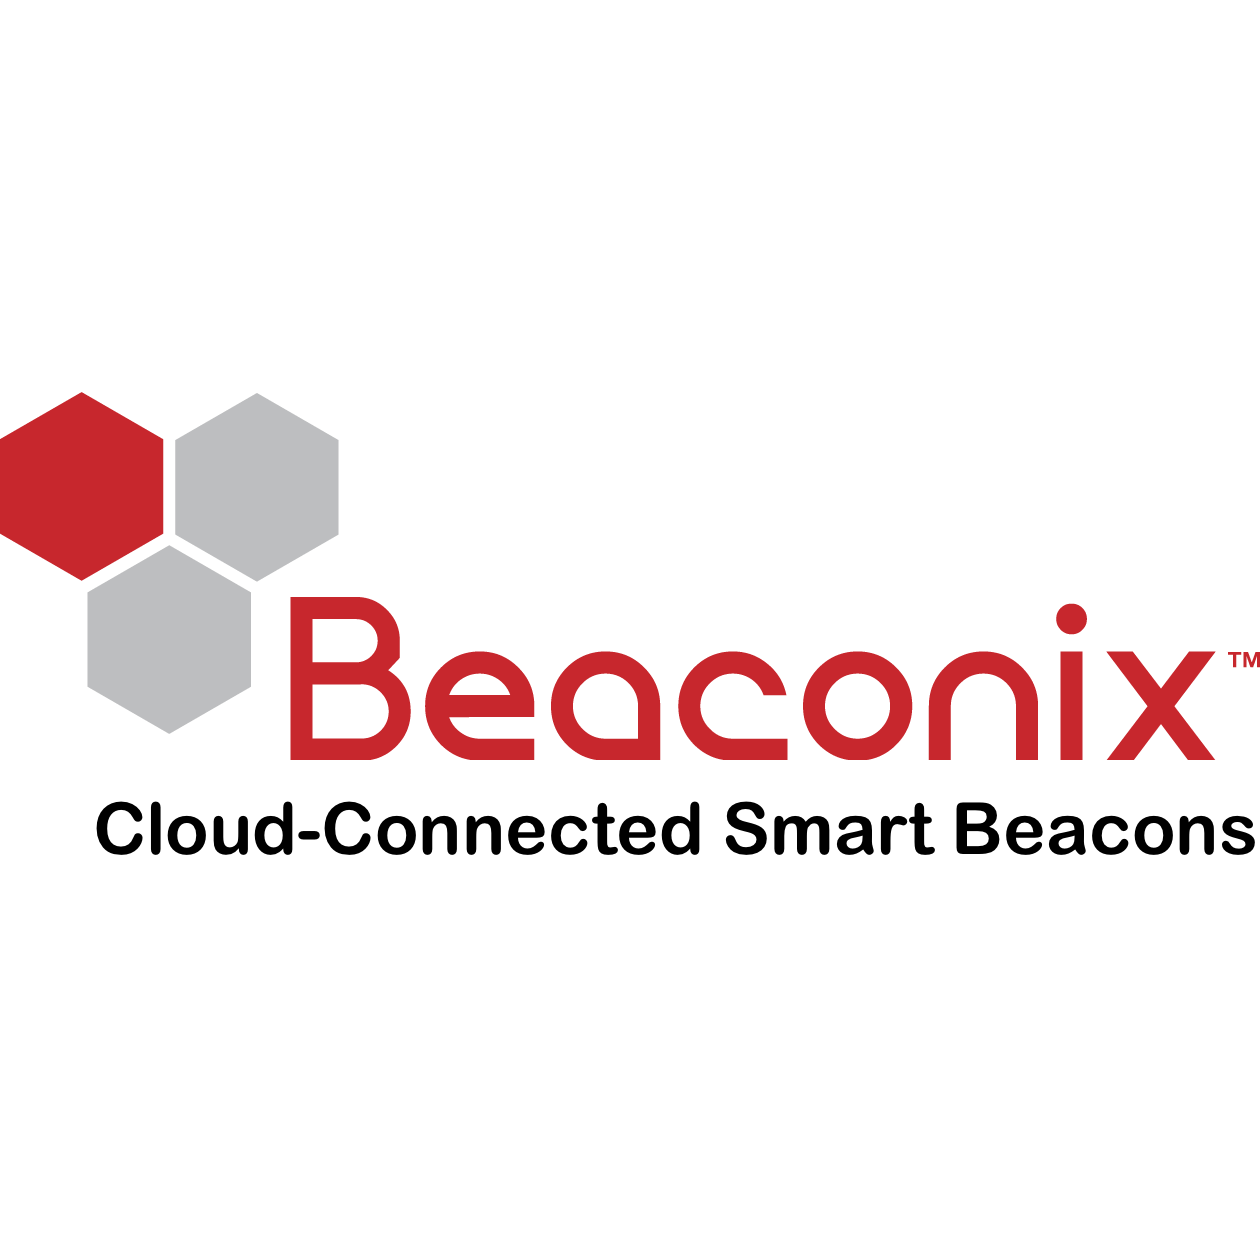 Beaconix